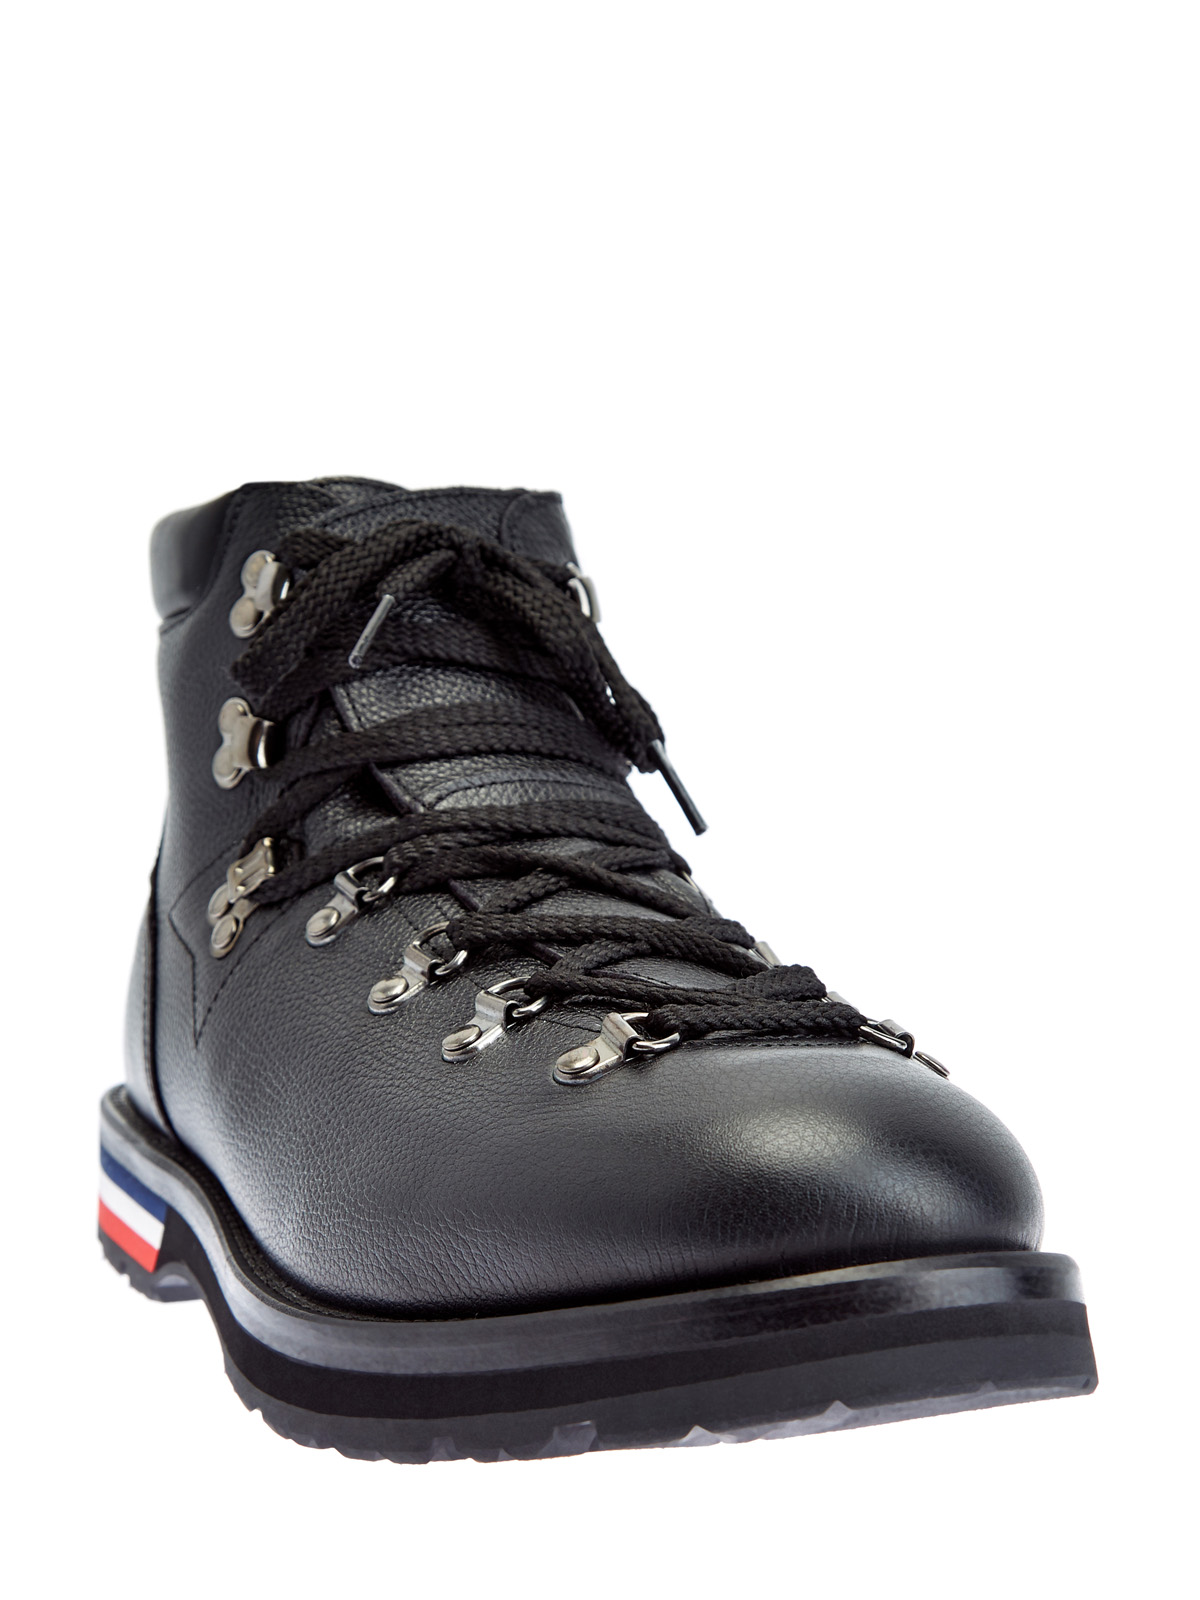 Кожаные ботинки Peak на массивной подошве с протектором MONCLER, цвет черный, размер 41;41.5;42;42.5;43;43.5;44;45 - фото 3